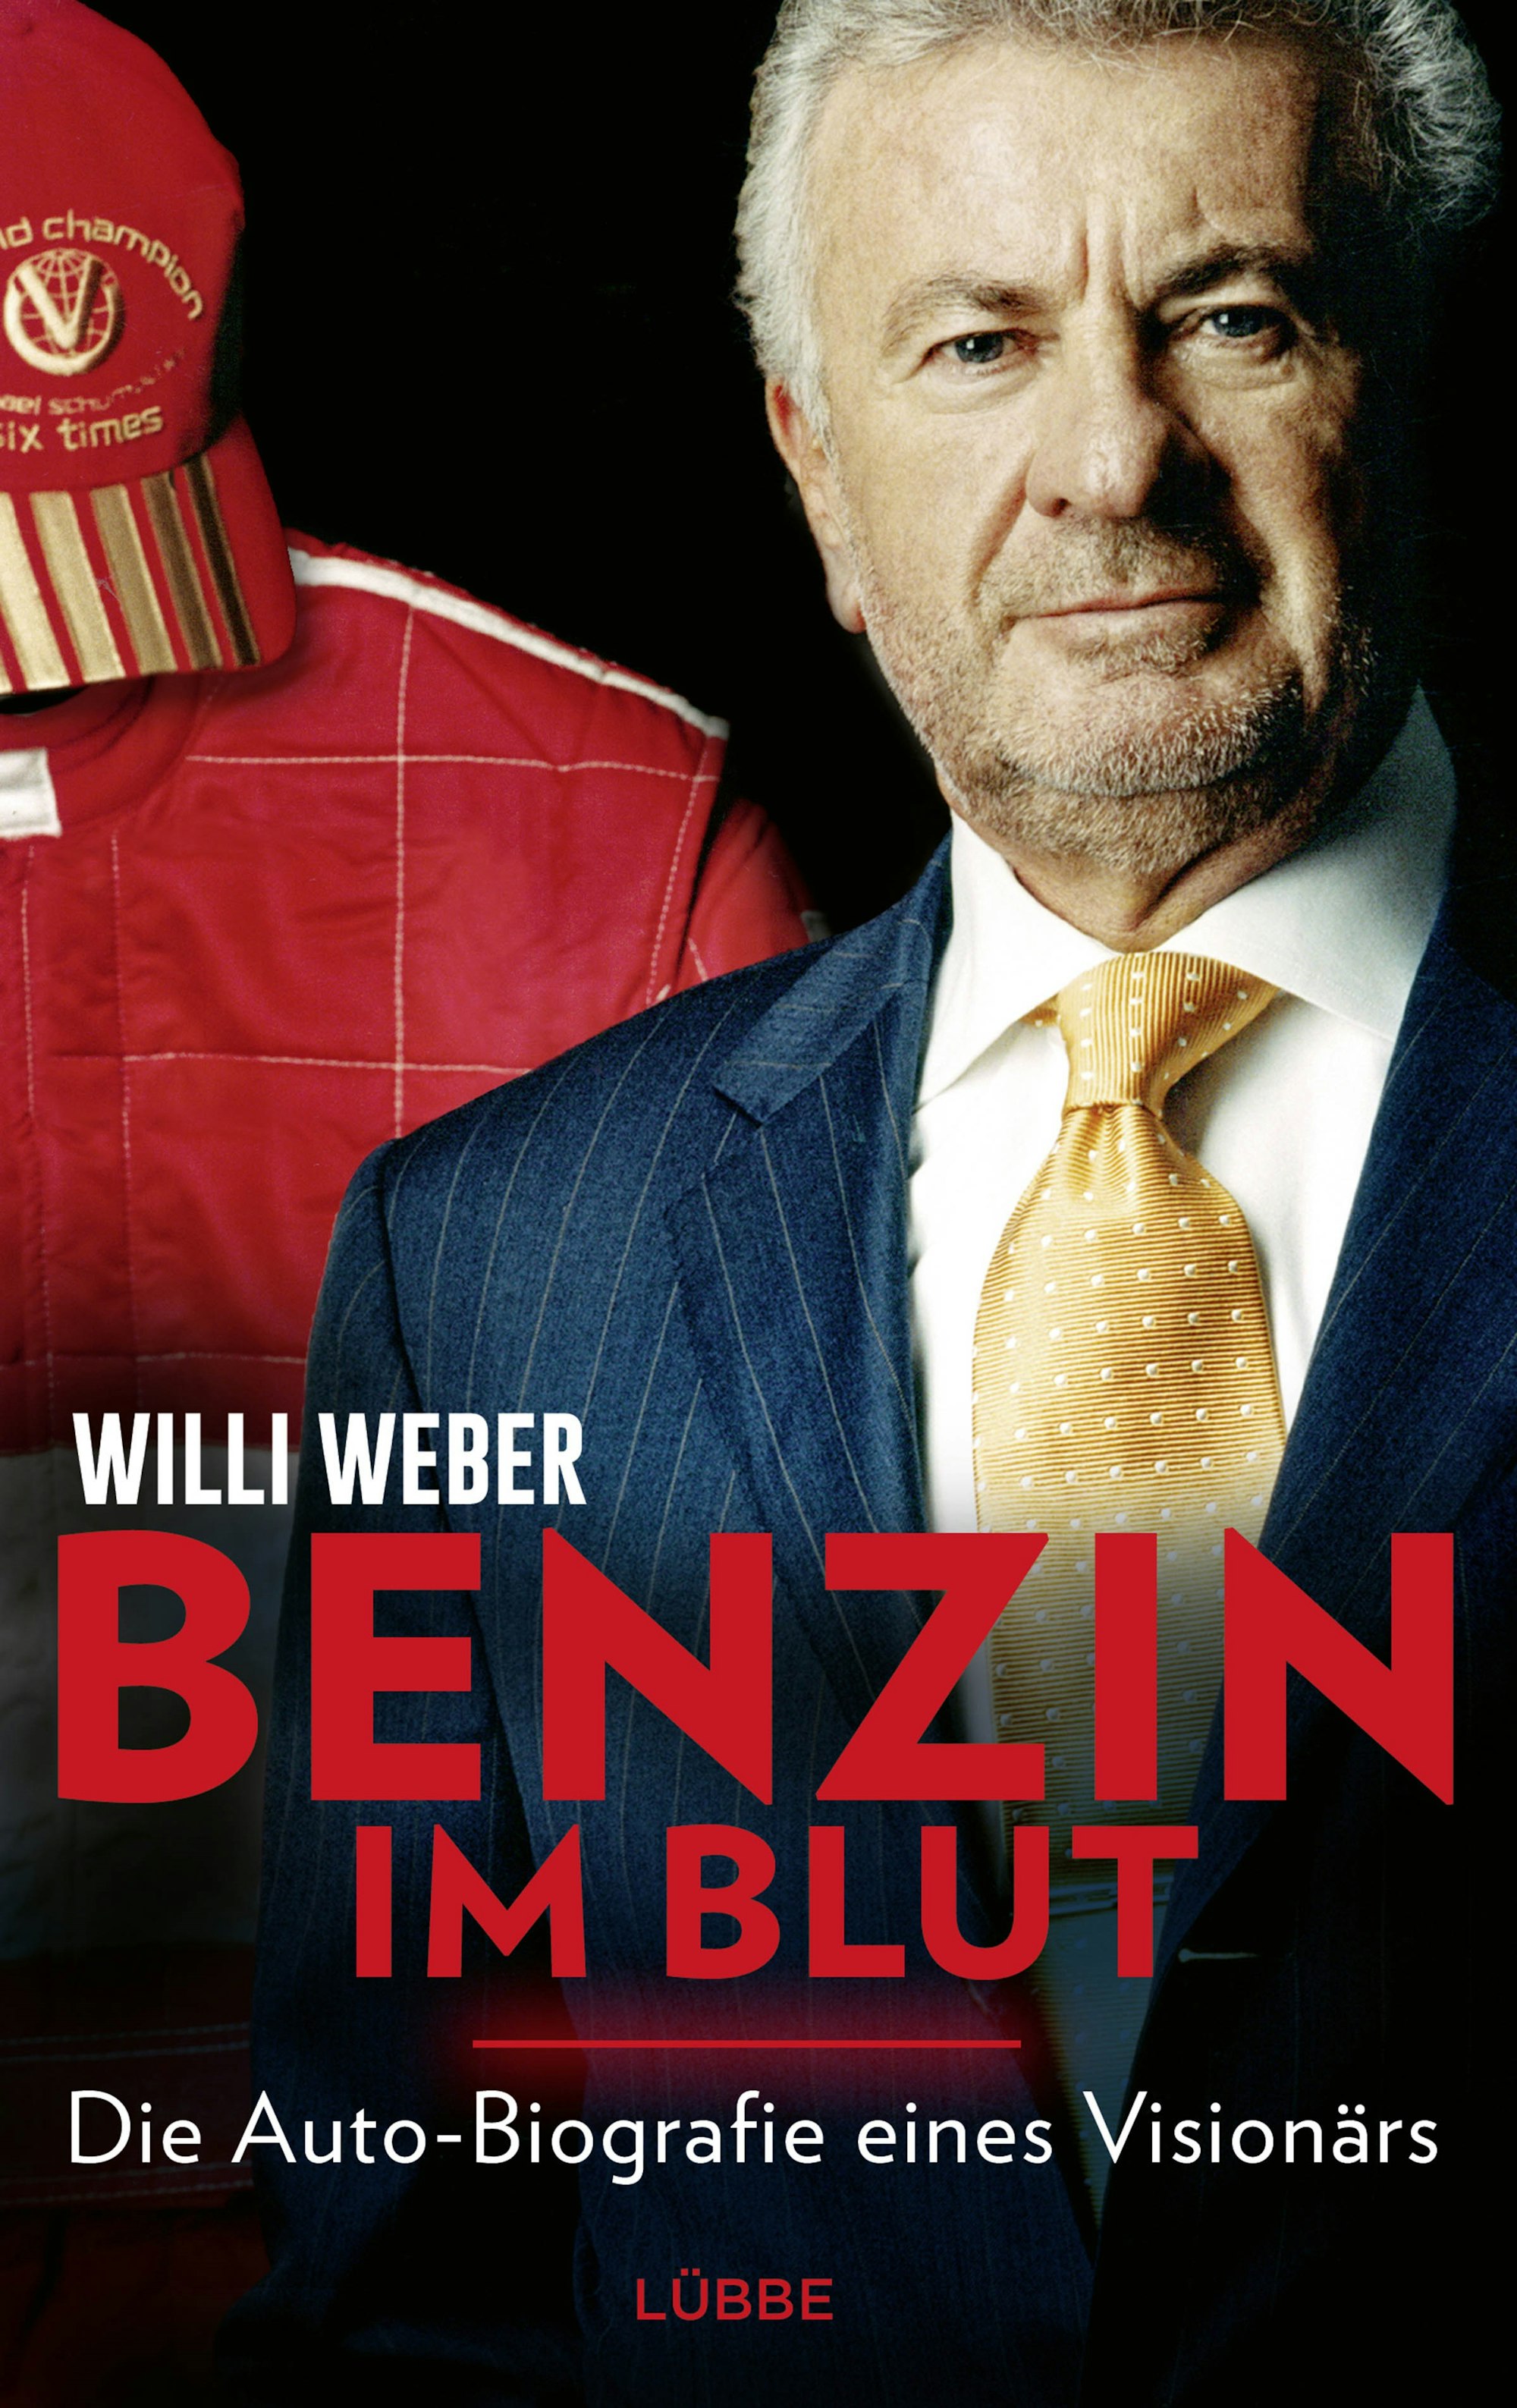 Buchcover der Autobiografie von Willi Weber: „Benzin im Blut"